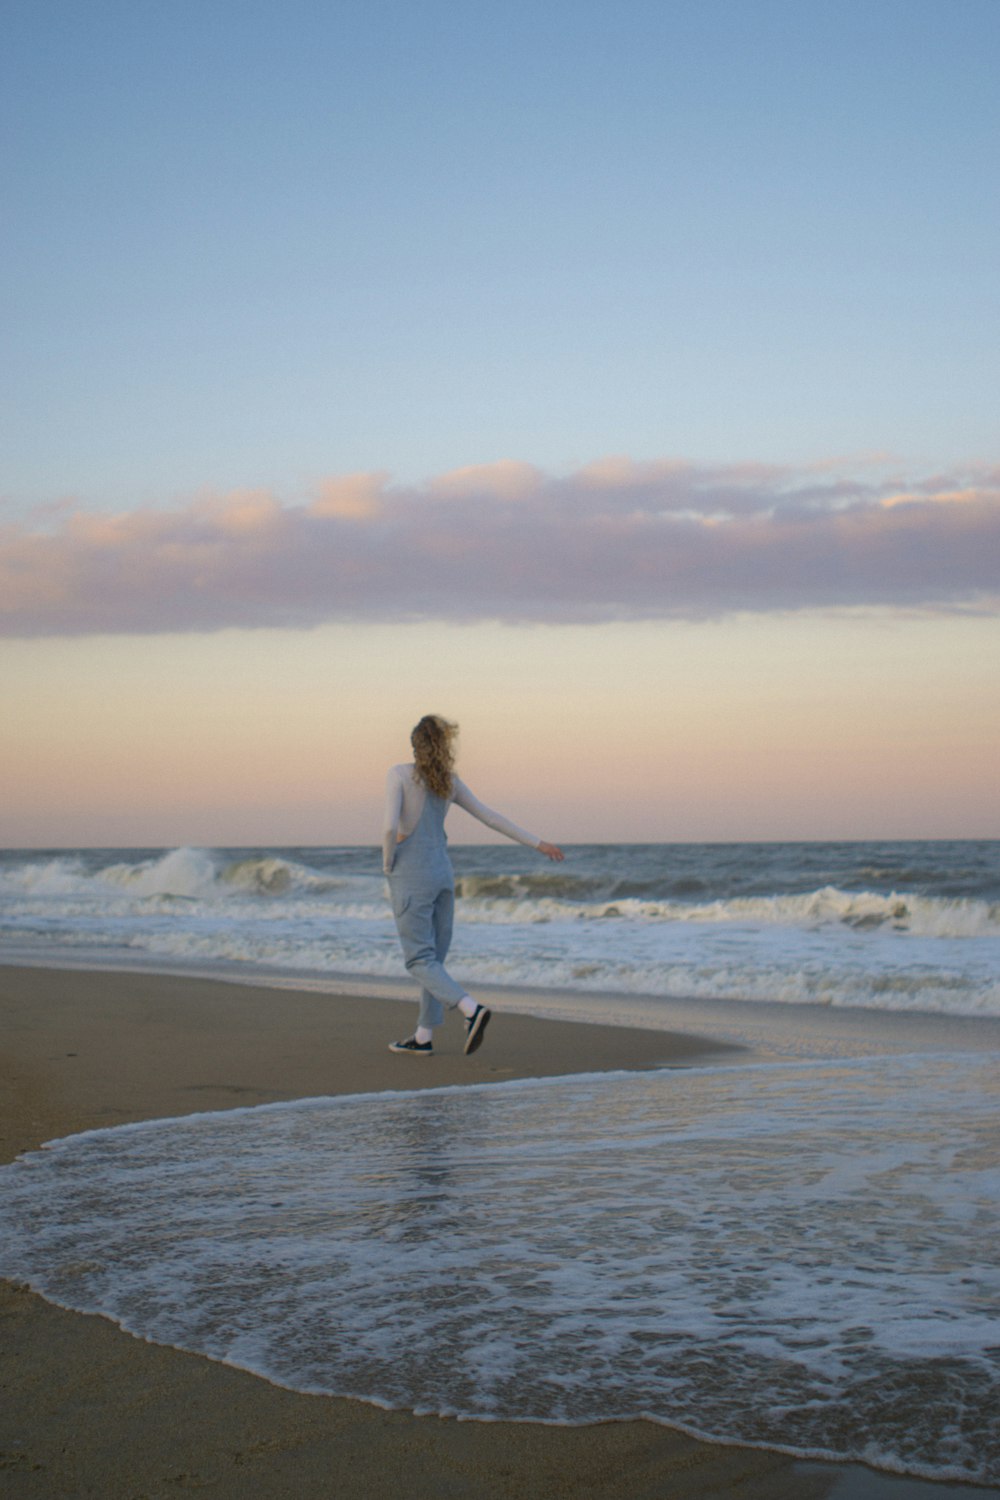 Une femme court sur la plage avec un frisbee